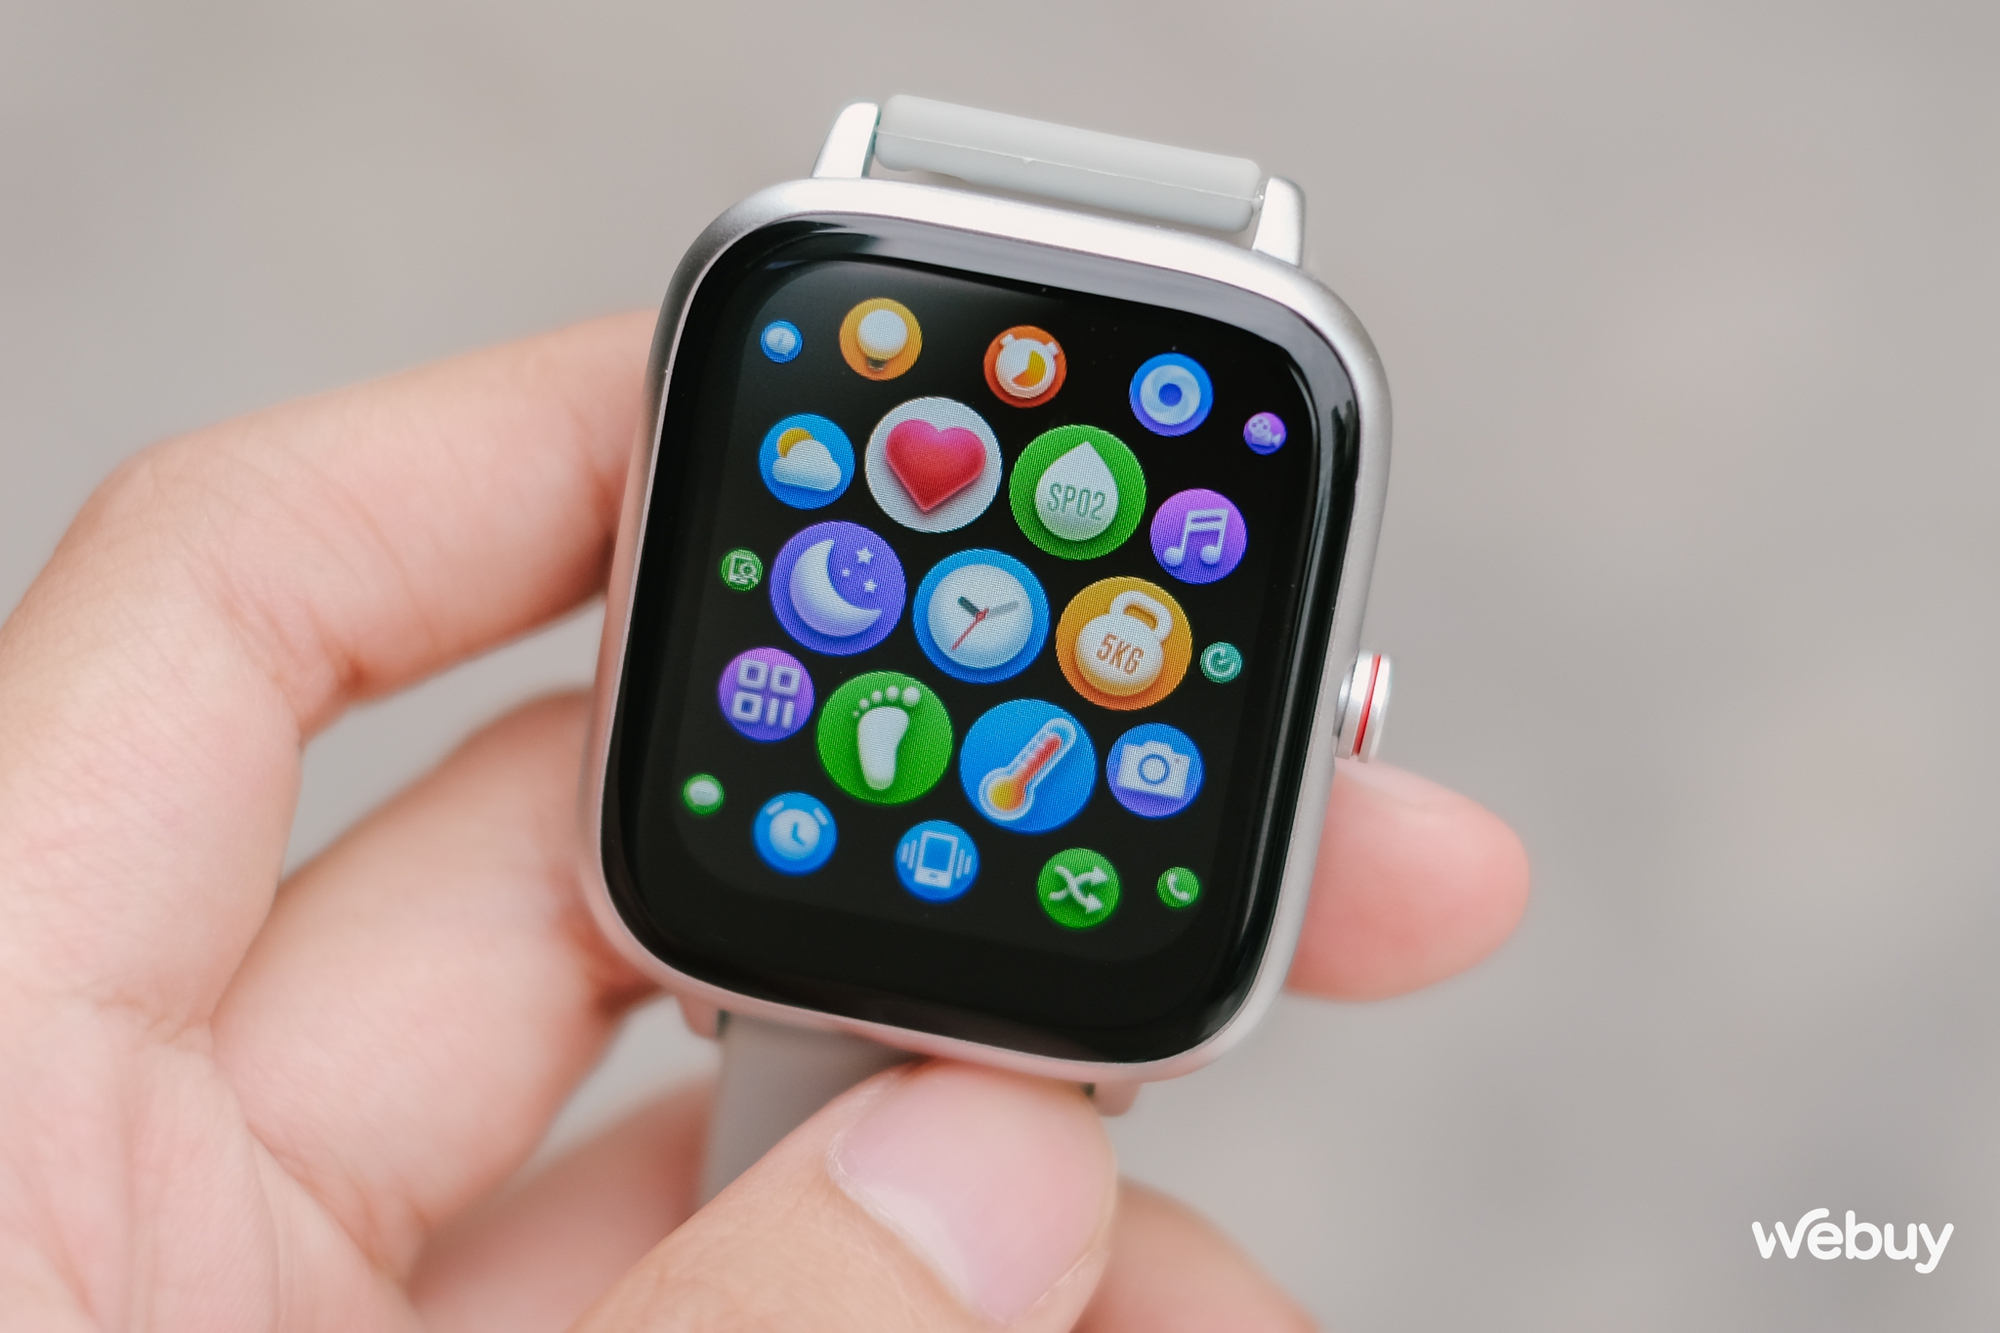 Smartwatch chính hãng giá 490.000 đồng: Thiết kế giống Apple Watch, khung viền nhôm, có loa/mic thoại, pin 7 ngày - Ảnh 4.